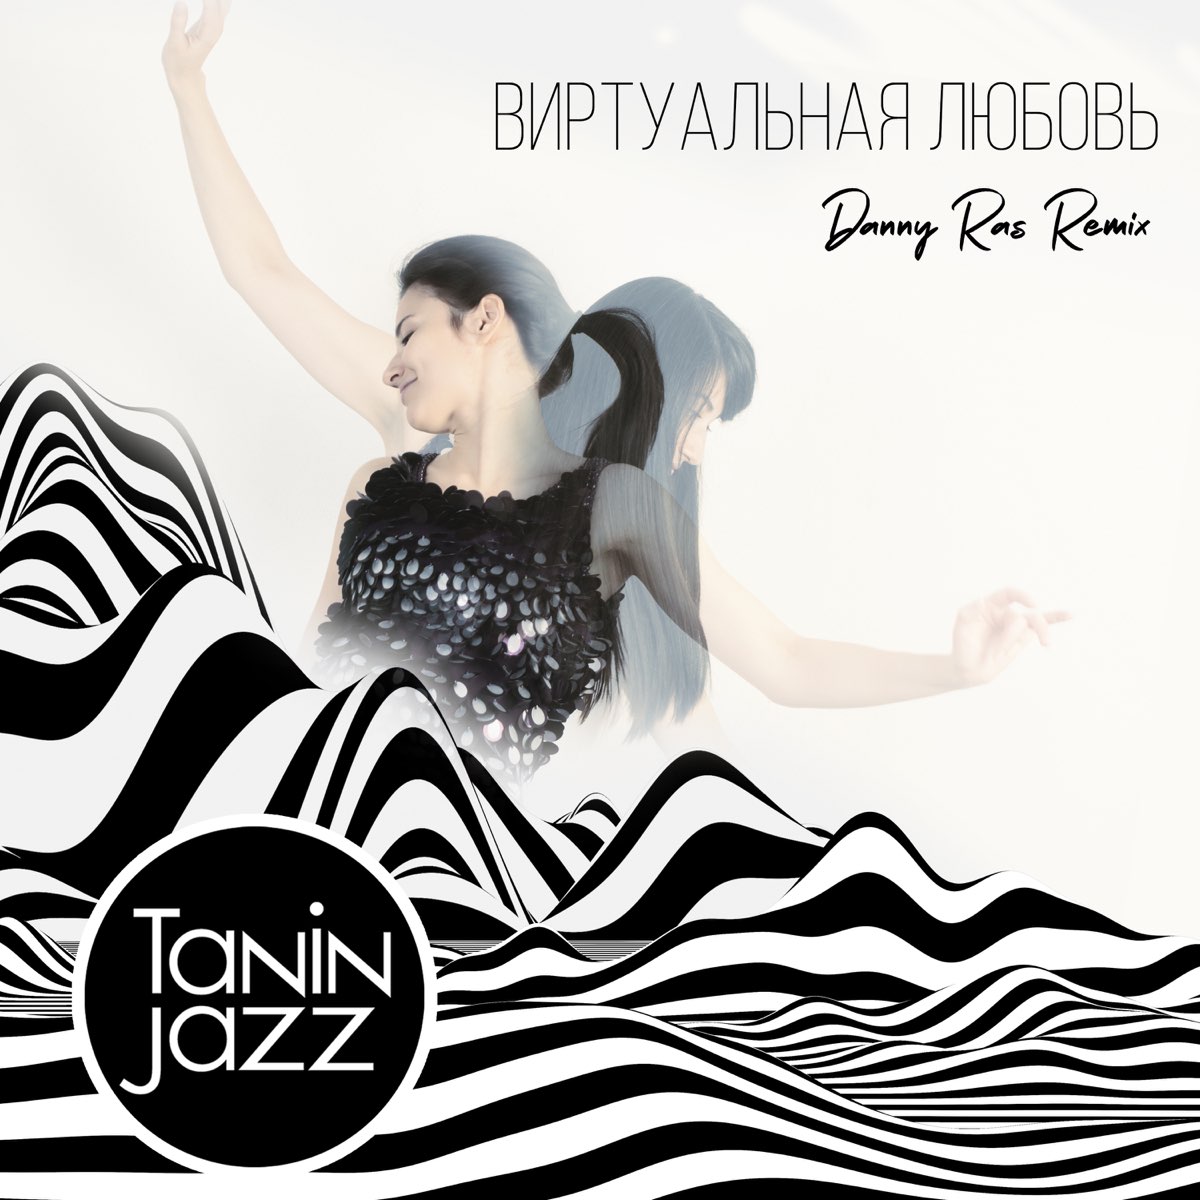 Tanin Jazz певица. Виртуальная любовь Tanin Jazz. Tanin Jazz – виртуальная любовь(Danny ras Remix). Танин джаз виртуальная любовь ремиксы.